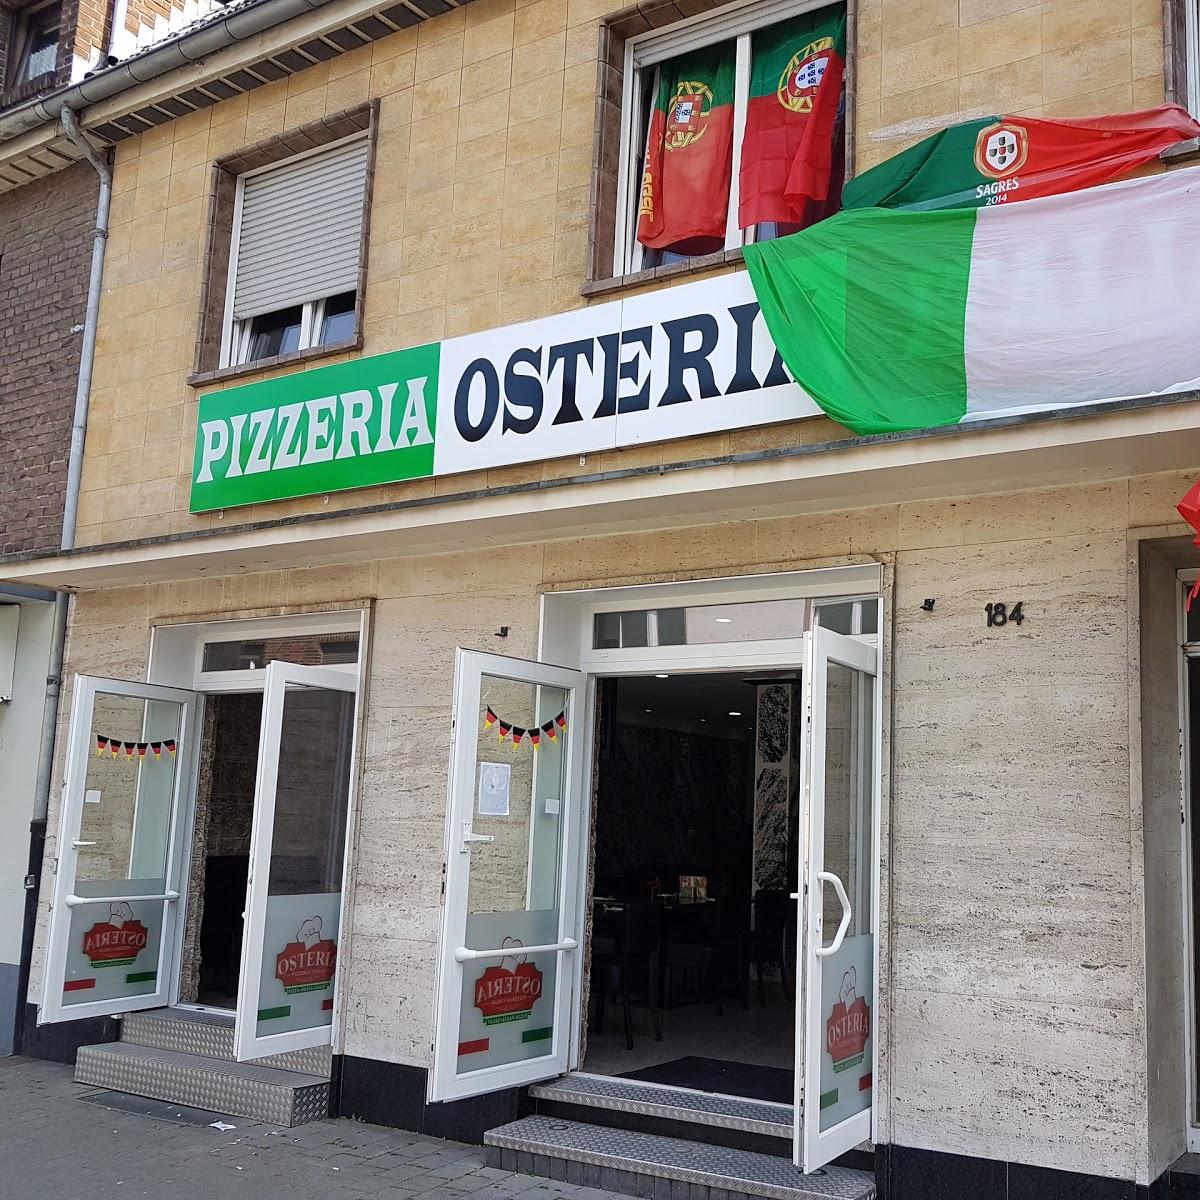 Restaurant "Pizzeria Osteria" in Mönchengladbach